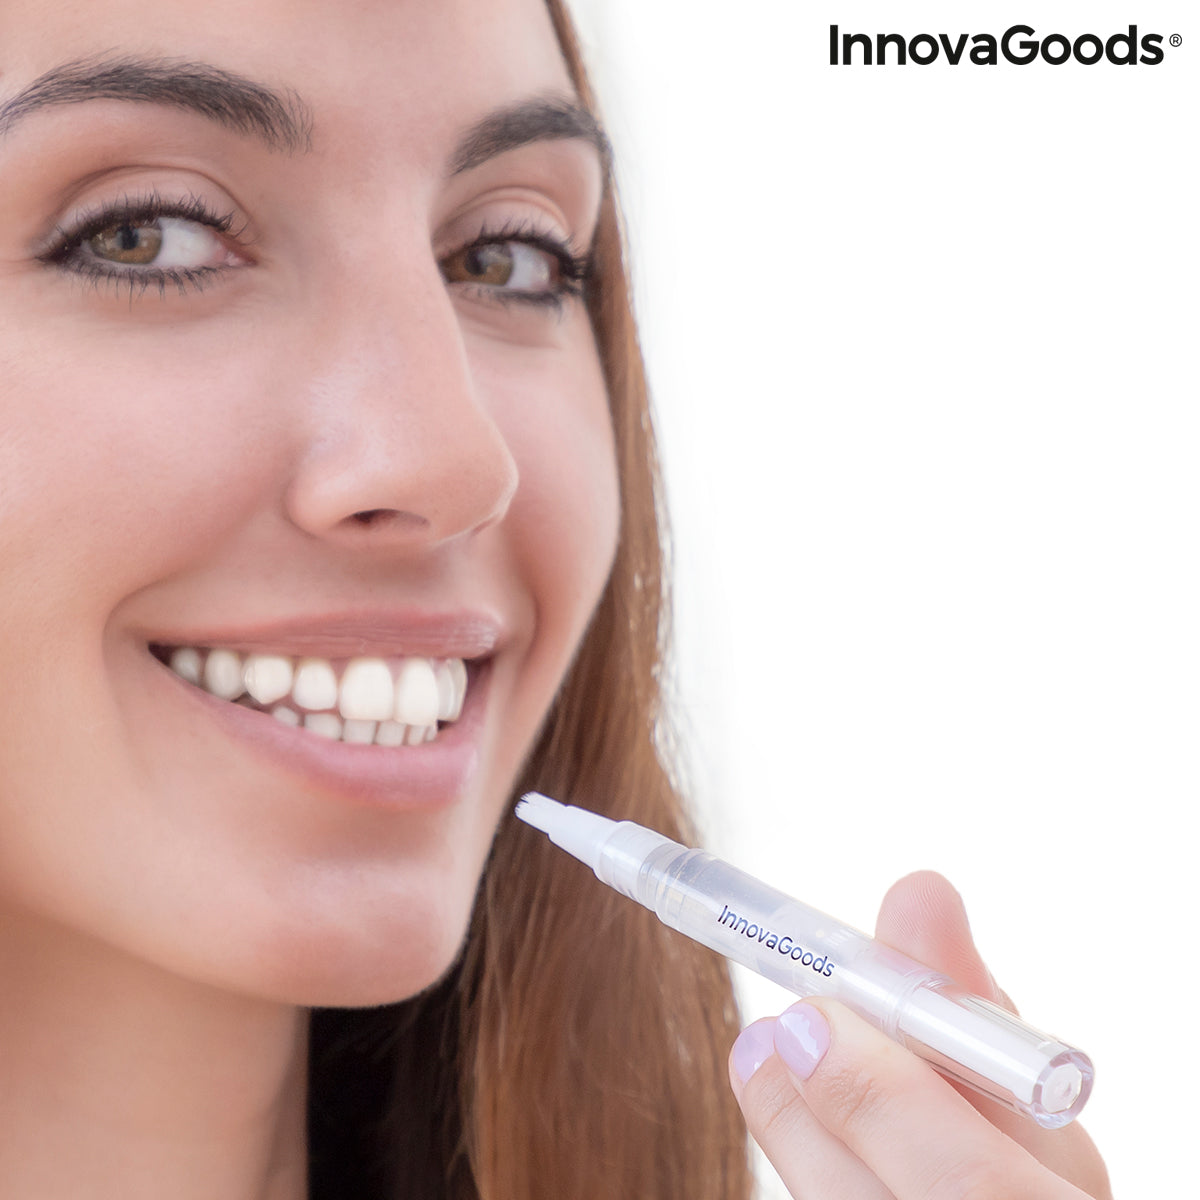 Stylo de blanchiment des dents Witen InnovaGoods 2 Unités